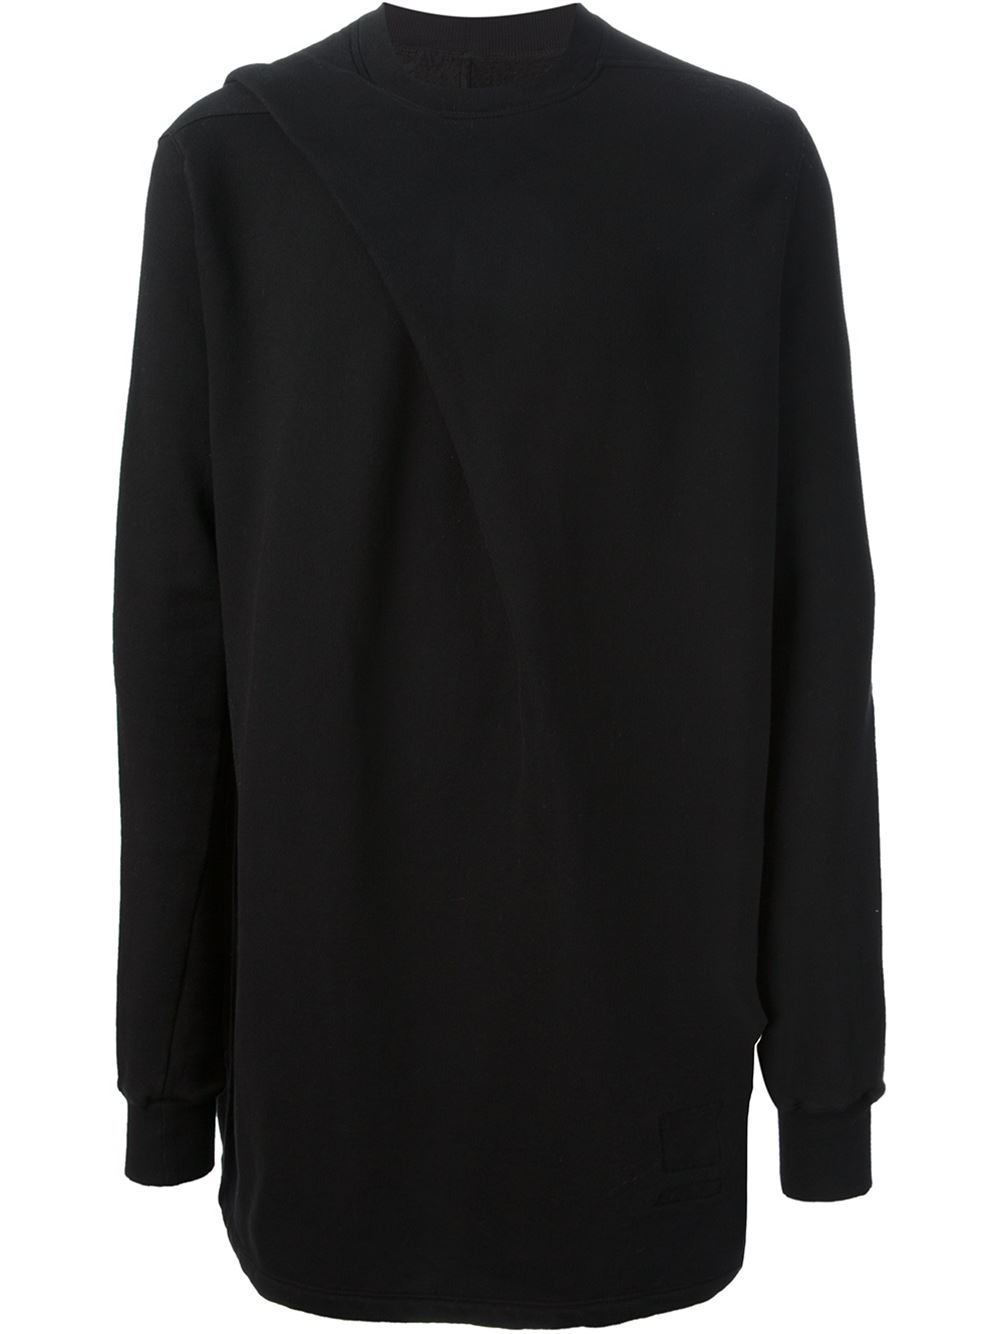 Rick Owens Drkshdw Asymmetric Drape Sweater in Black for Men - Lyst